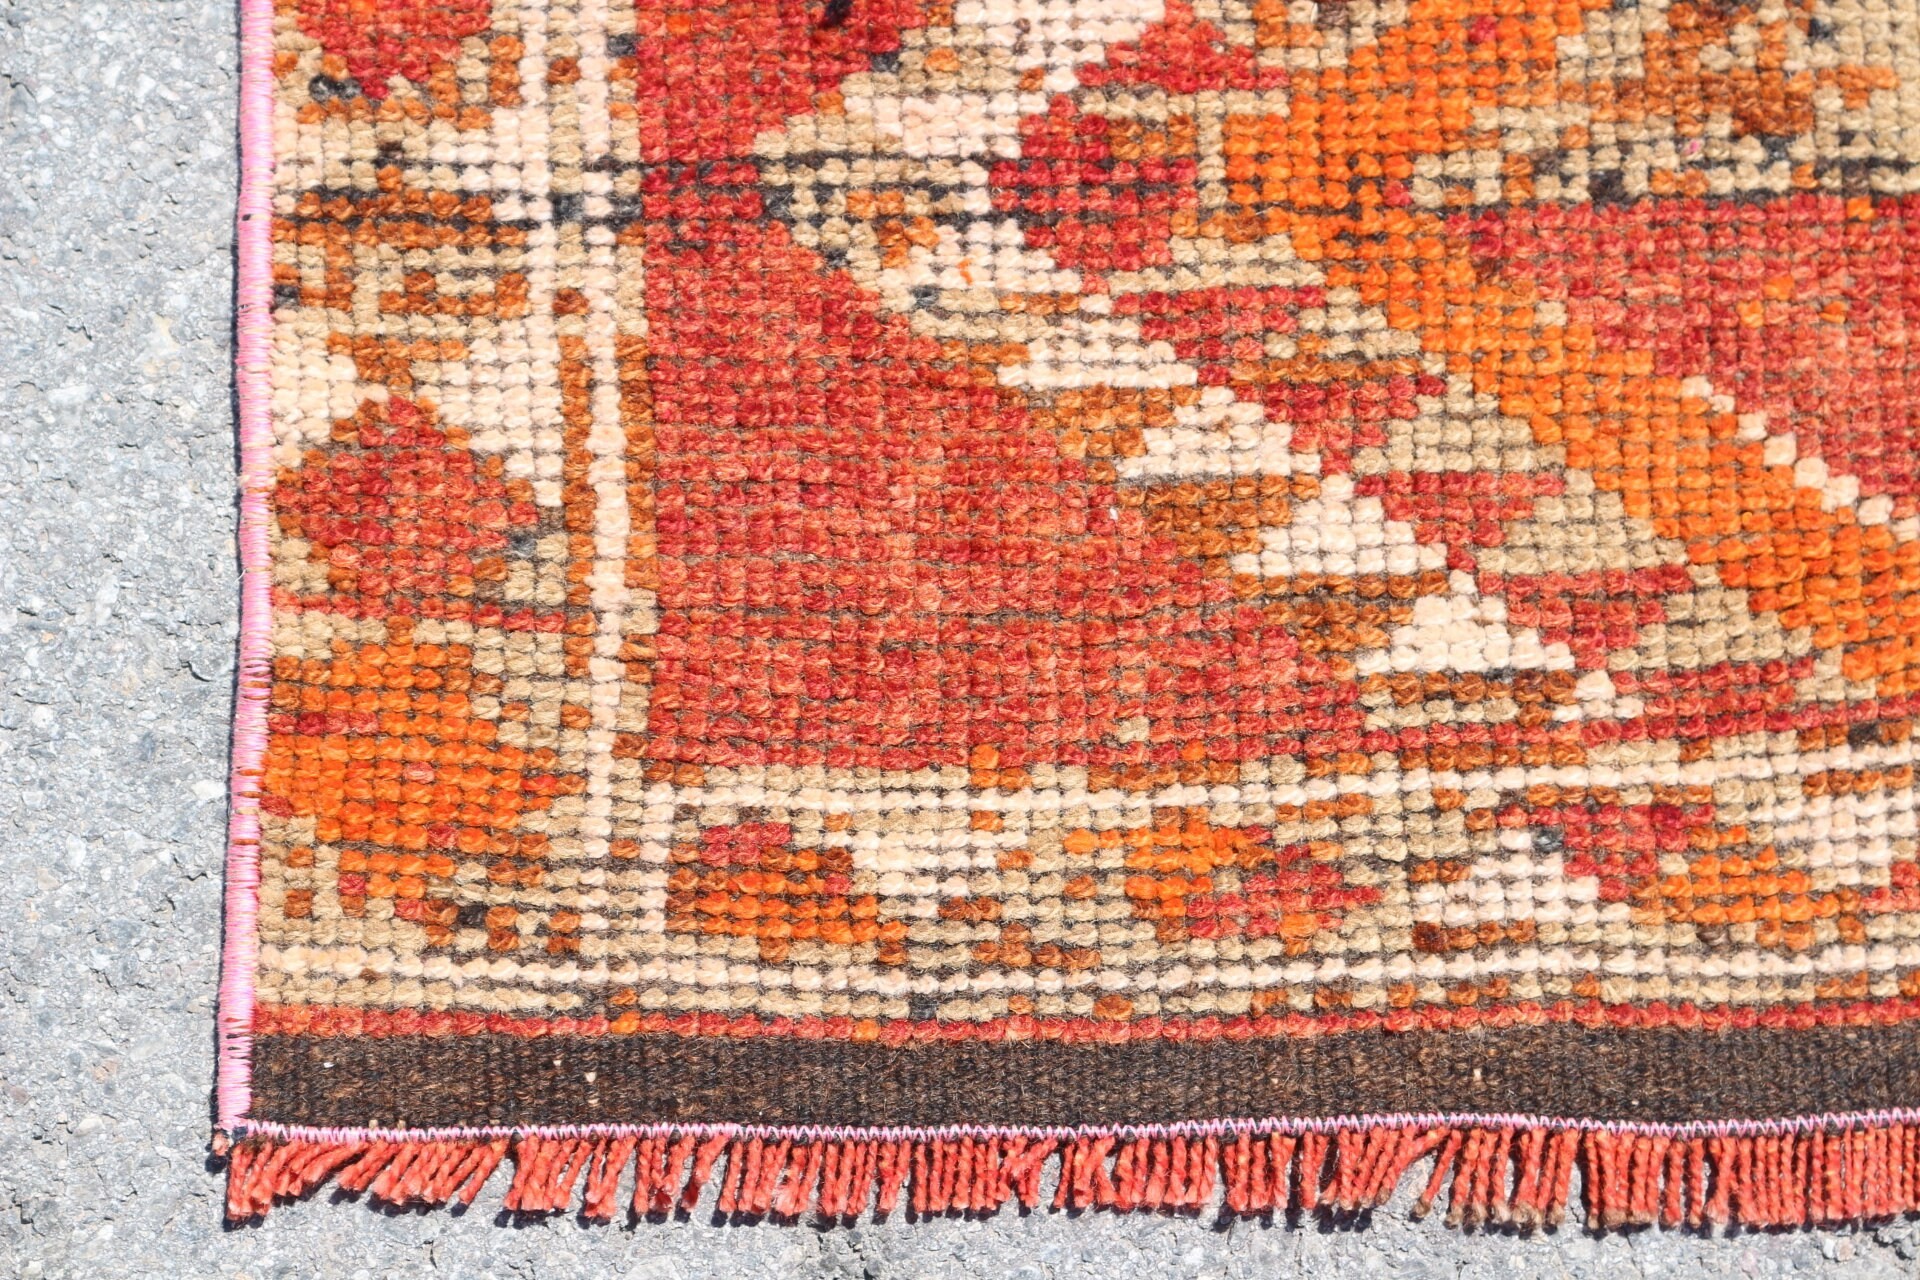 Turkish Rug, Antique Rug, Kitchen Rug, Hallway Rug, Wool Rugs, Cute Rug, Orange Home Decor Rug, Vintage Rugs, 3.1x10.5 ft Runner Rugs